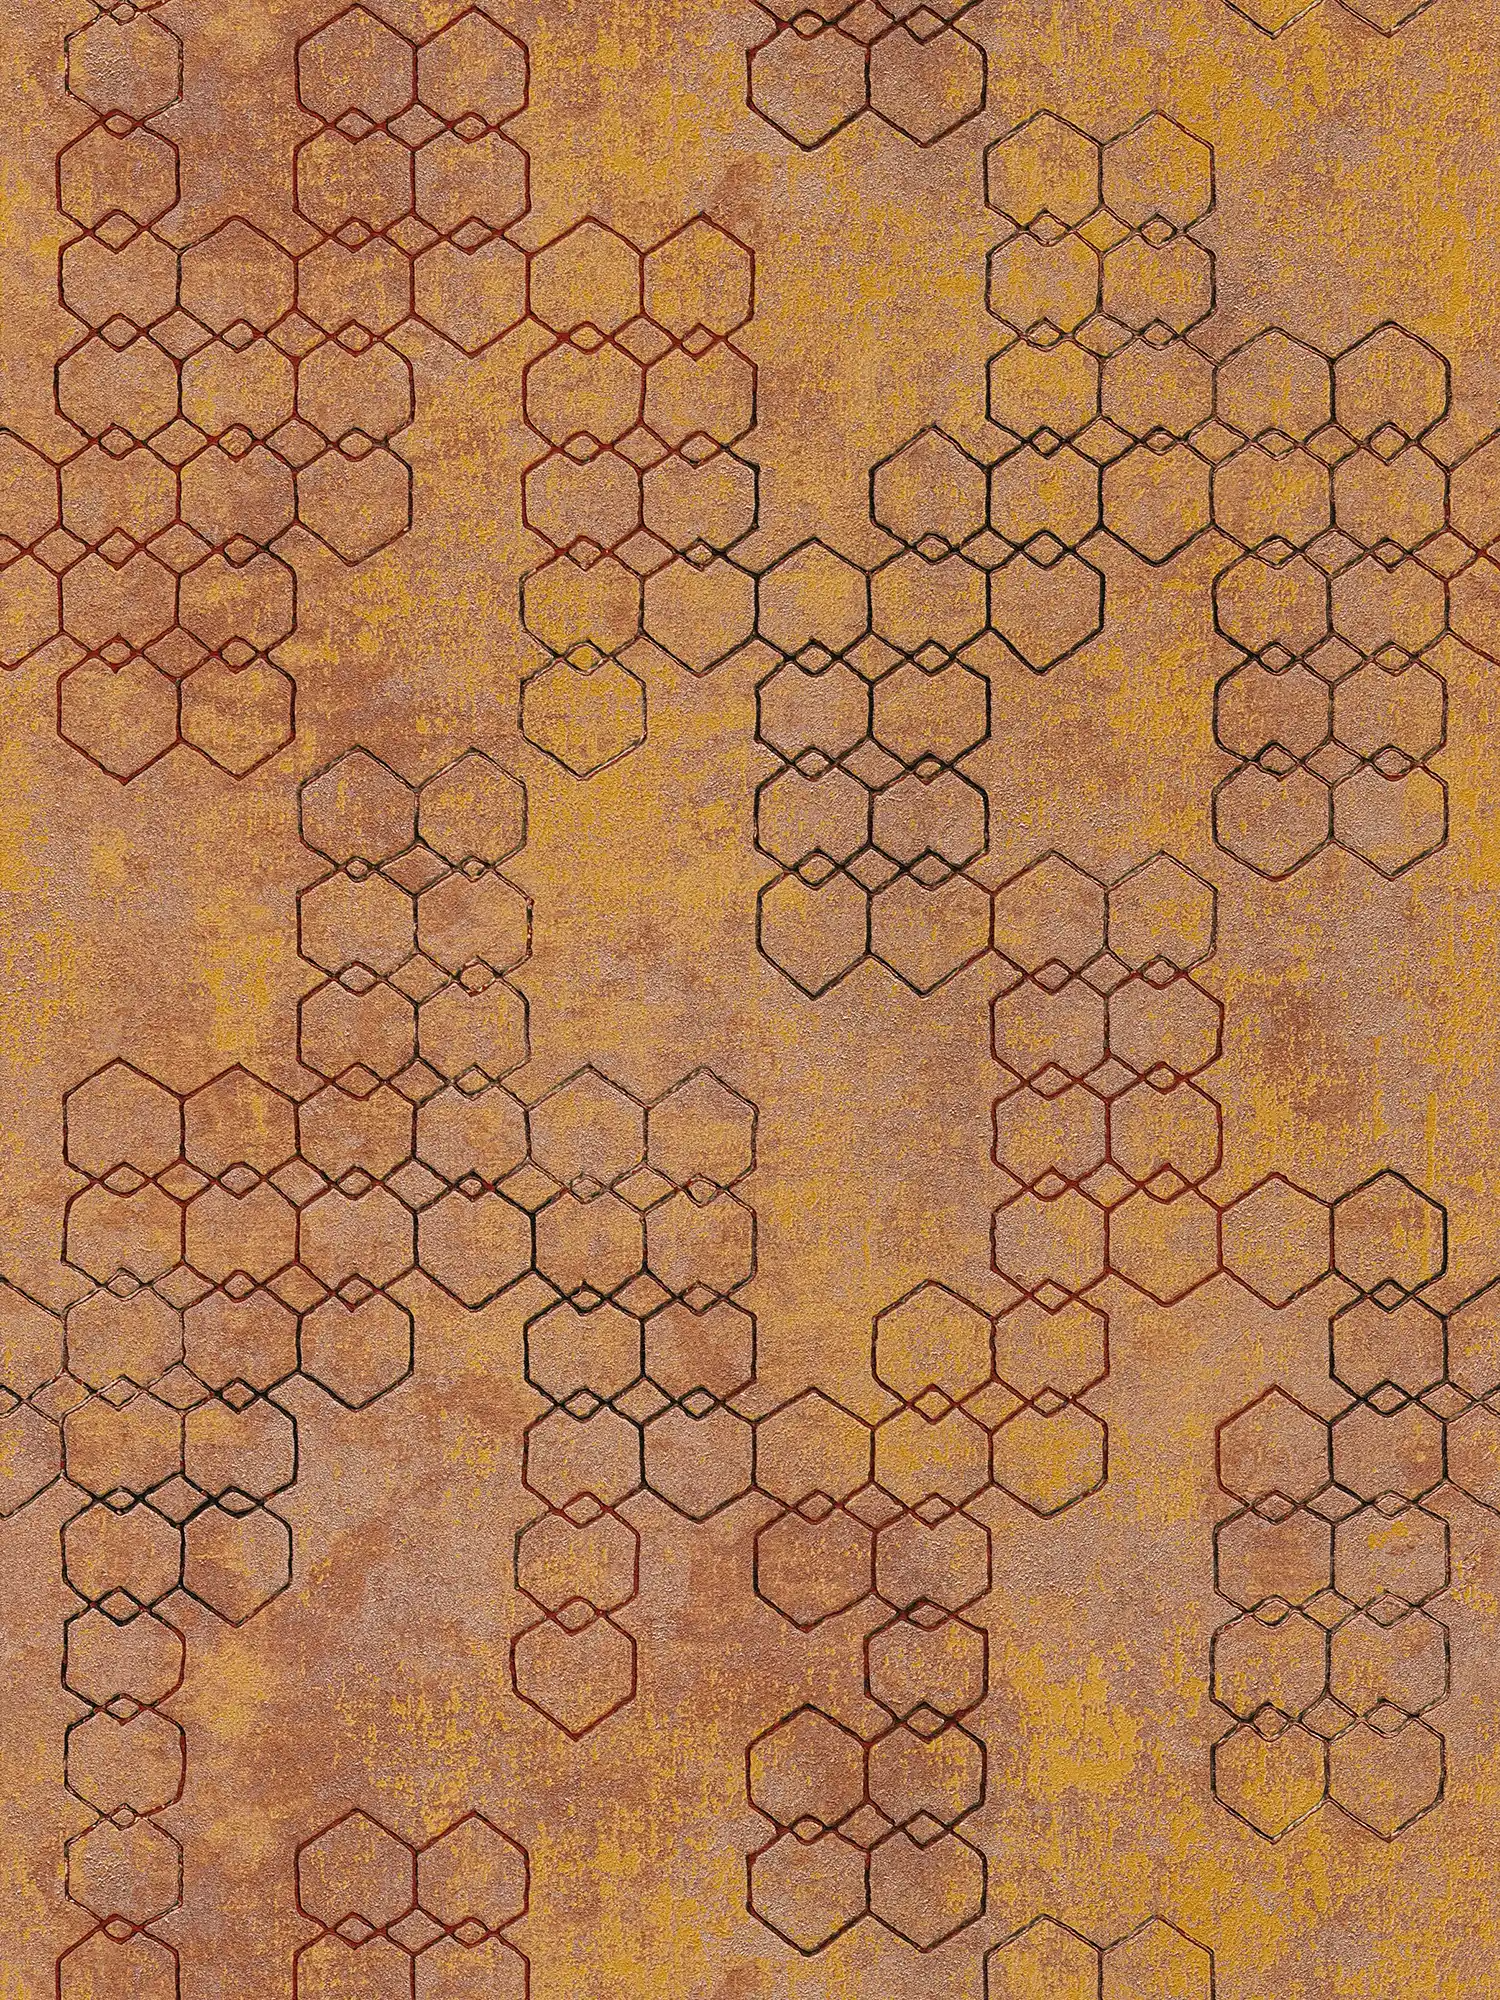 Geometrisch patroonbehang in industriële stijl - oranje, goud, bruin
